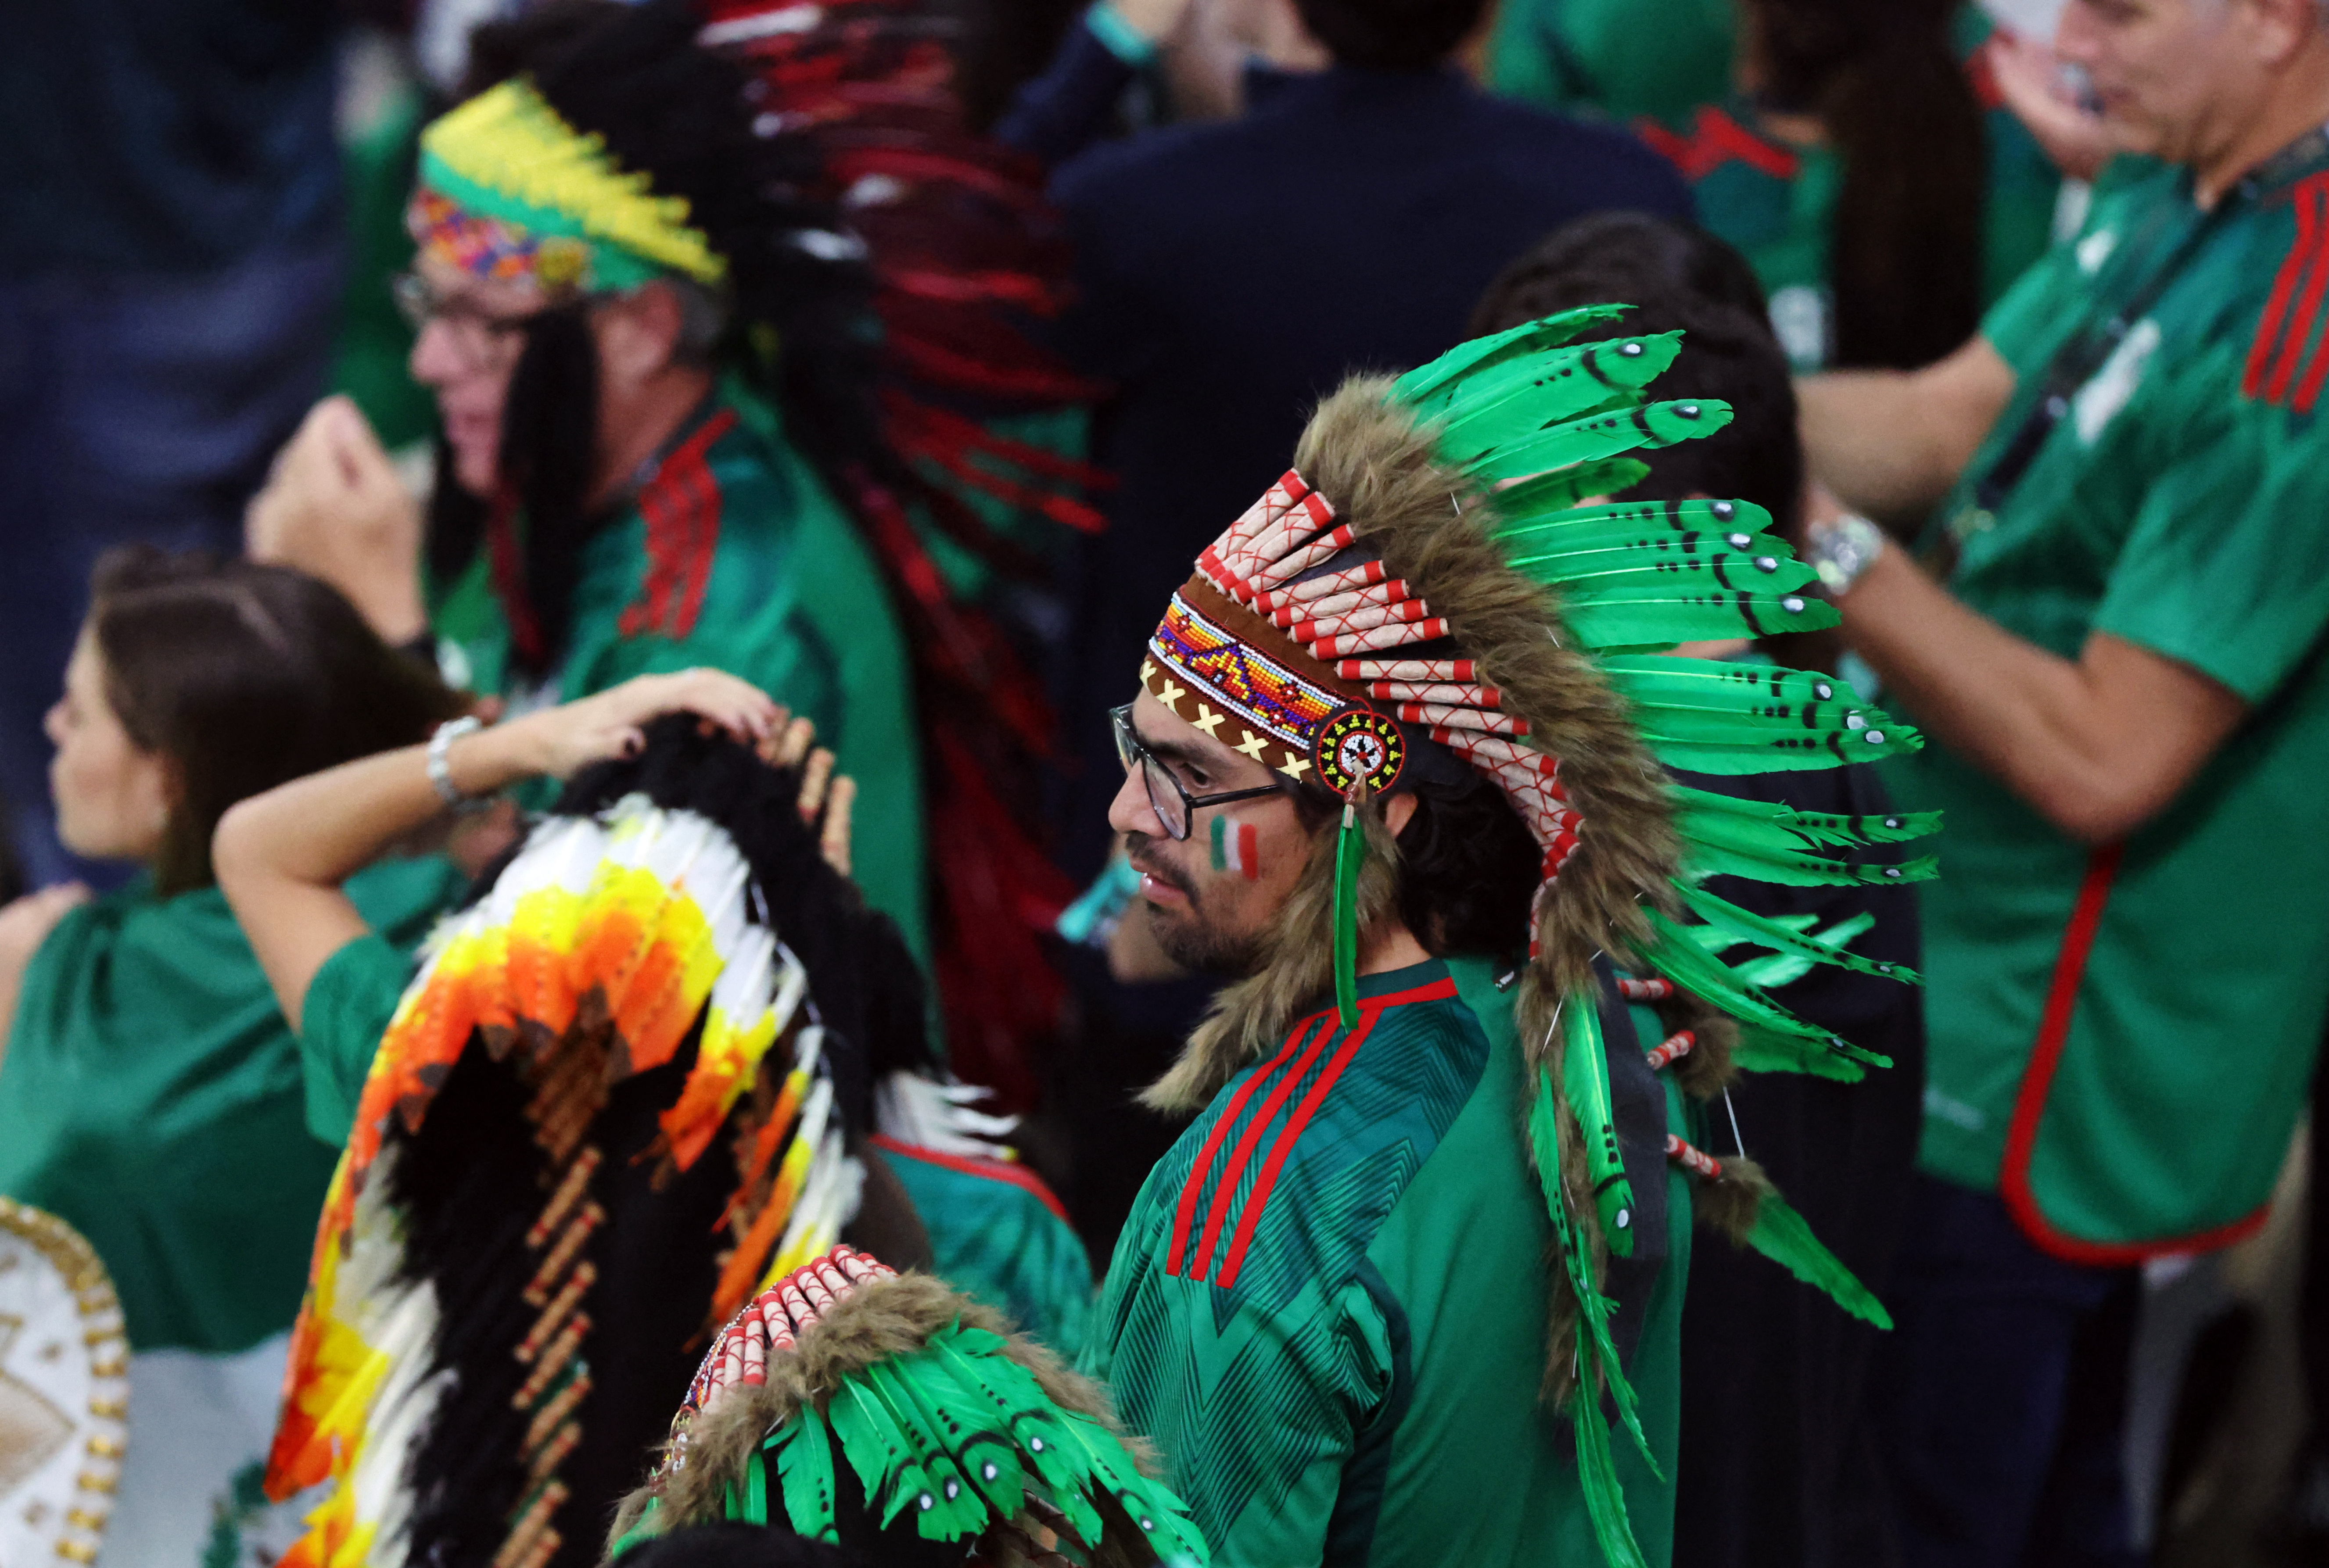 Los hinchas mexicanos aprovecharon para abuchear a los argentinos nativos en su seleccionado (REUTERS/Molly Darlington)